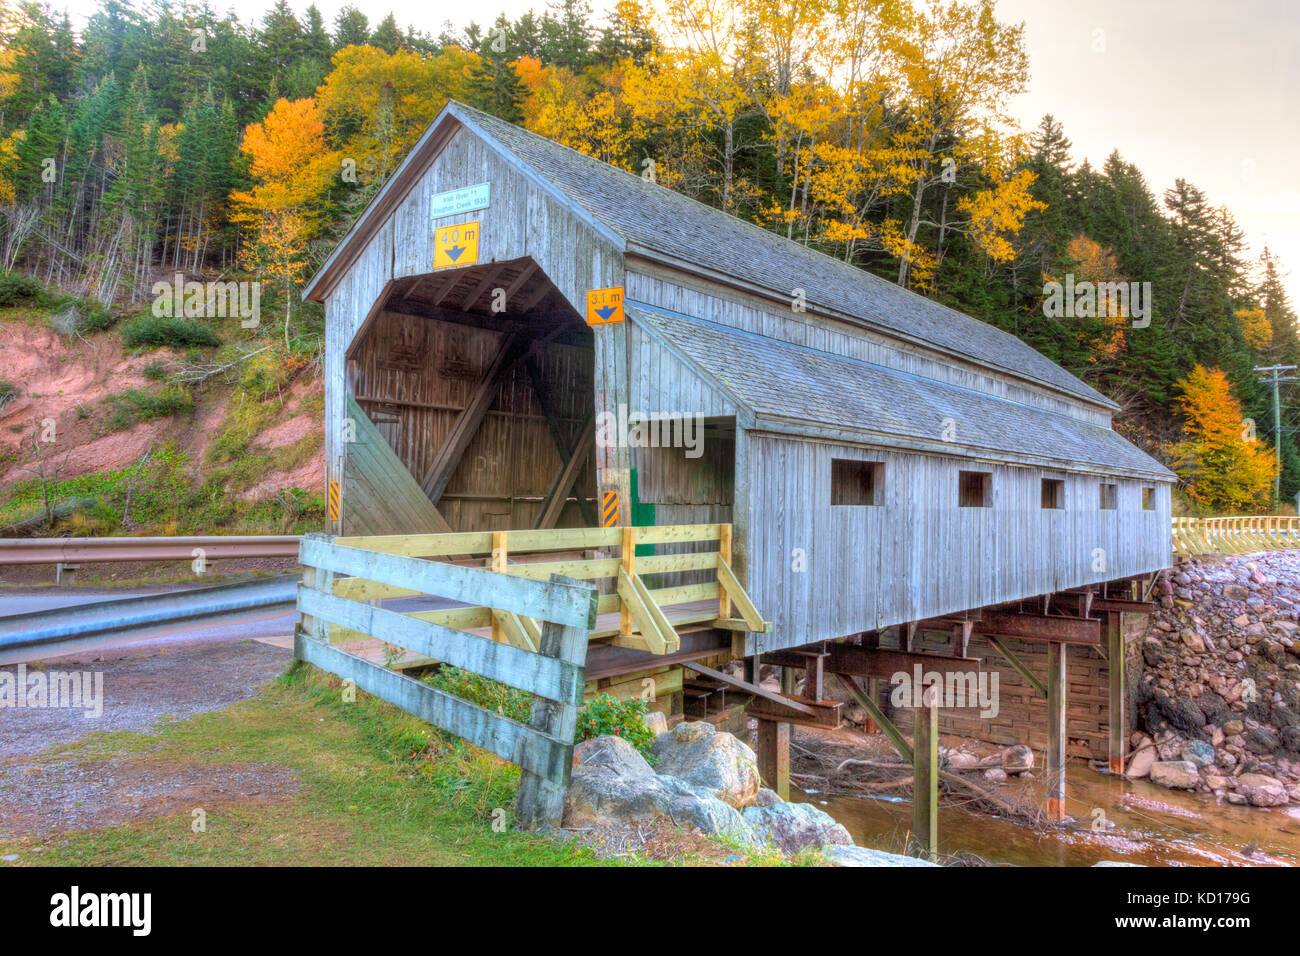 Irish River#1 Covered Bridge, Vaughan Creek, St. Martin's, New Brunswick, Canada Stock Photo